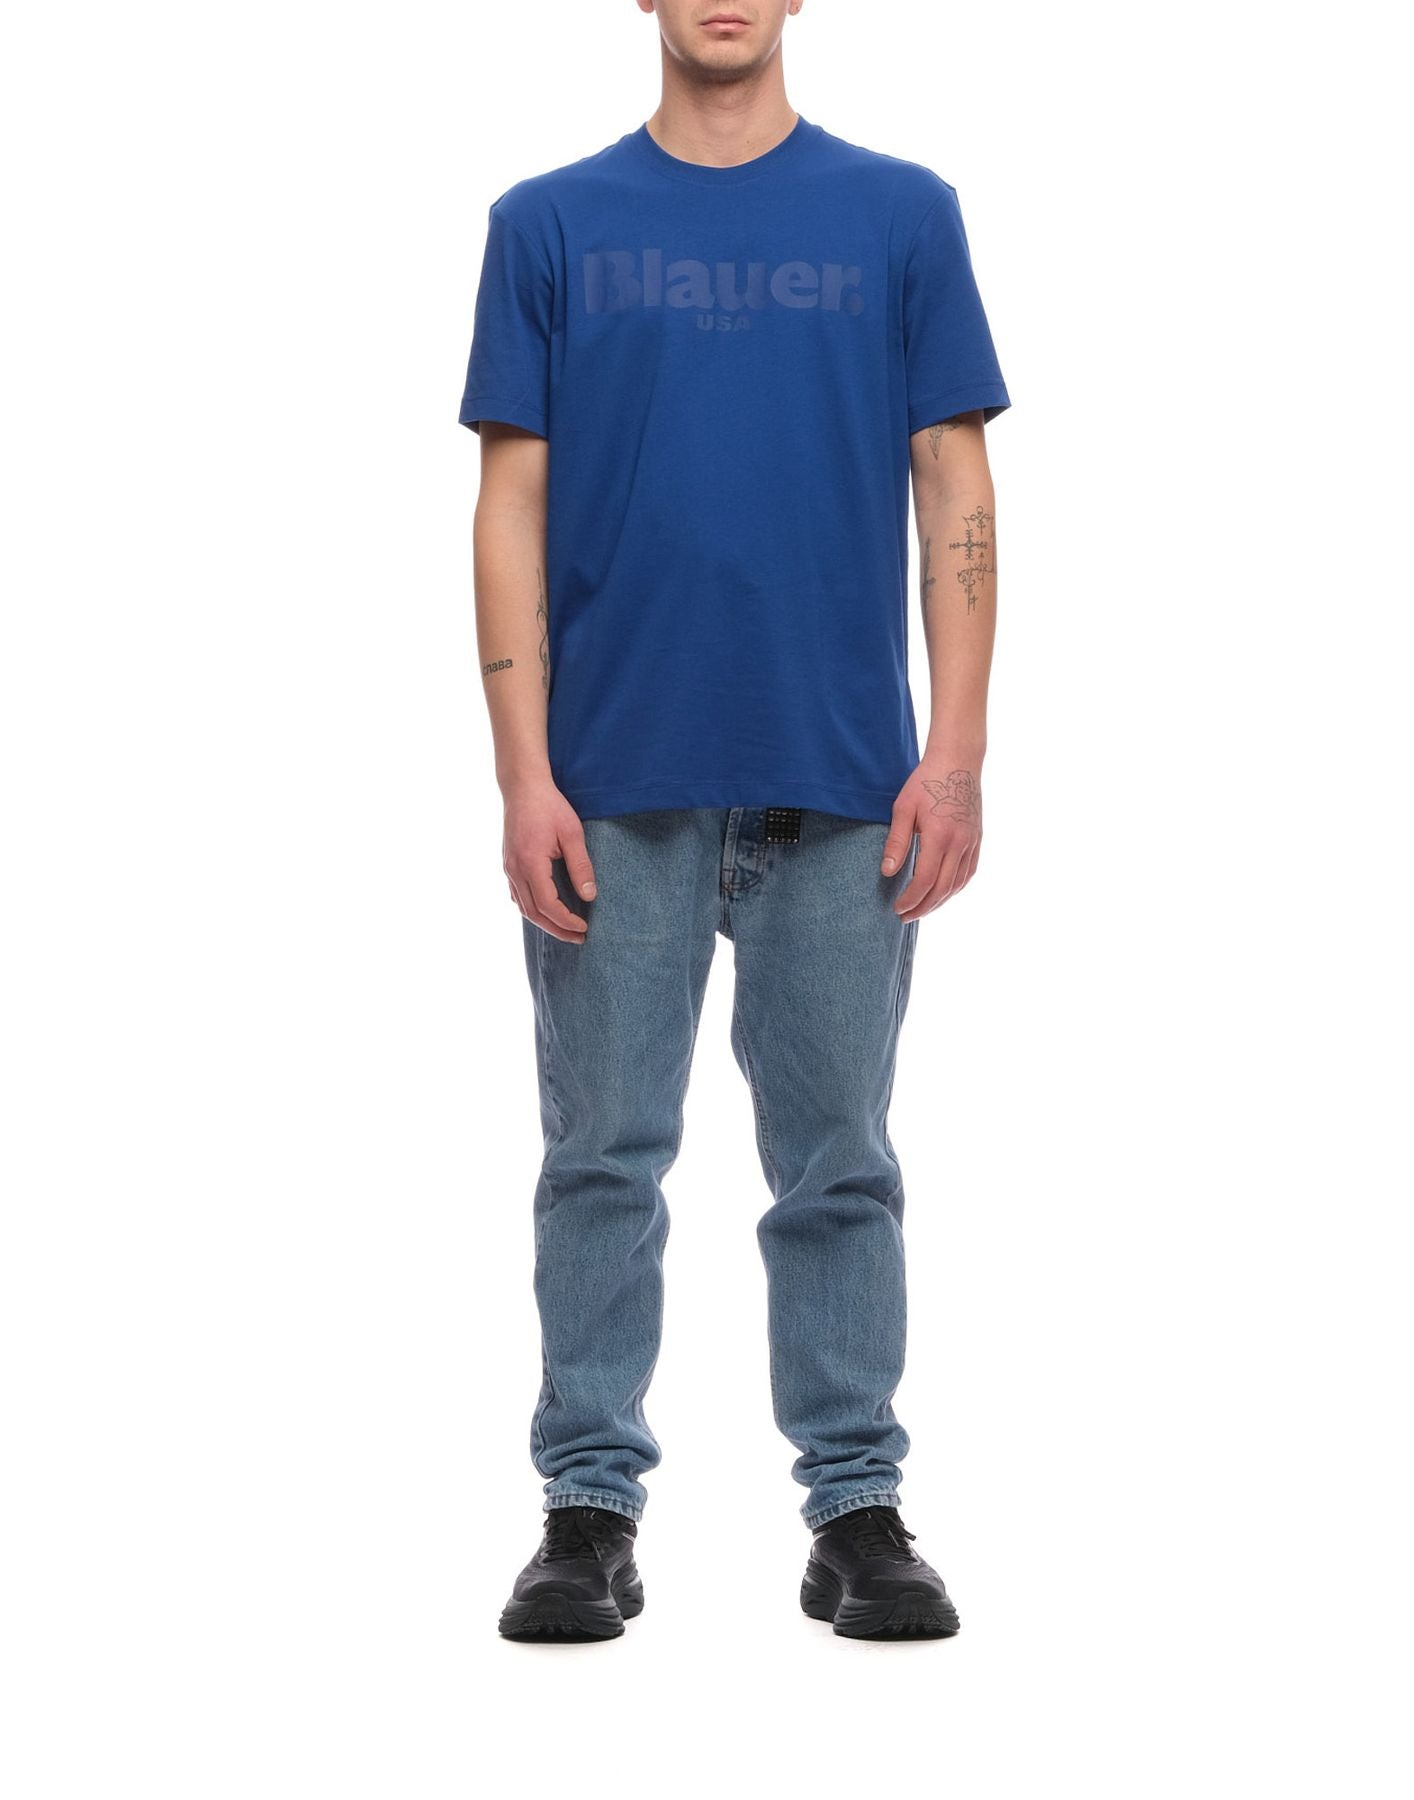 T-shirt for man BLUH02094 004547 772 Blauer